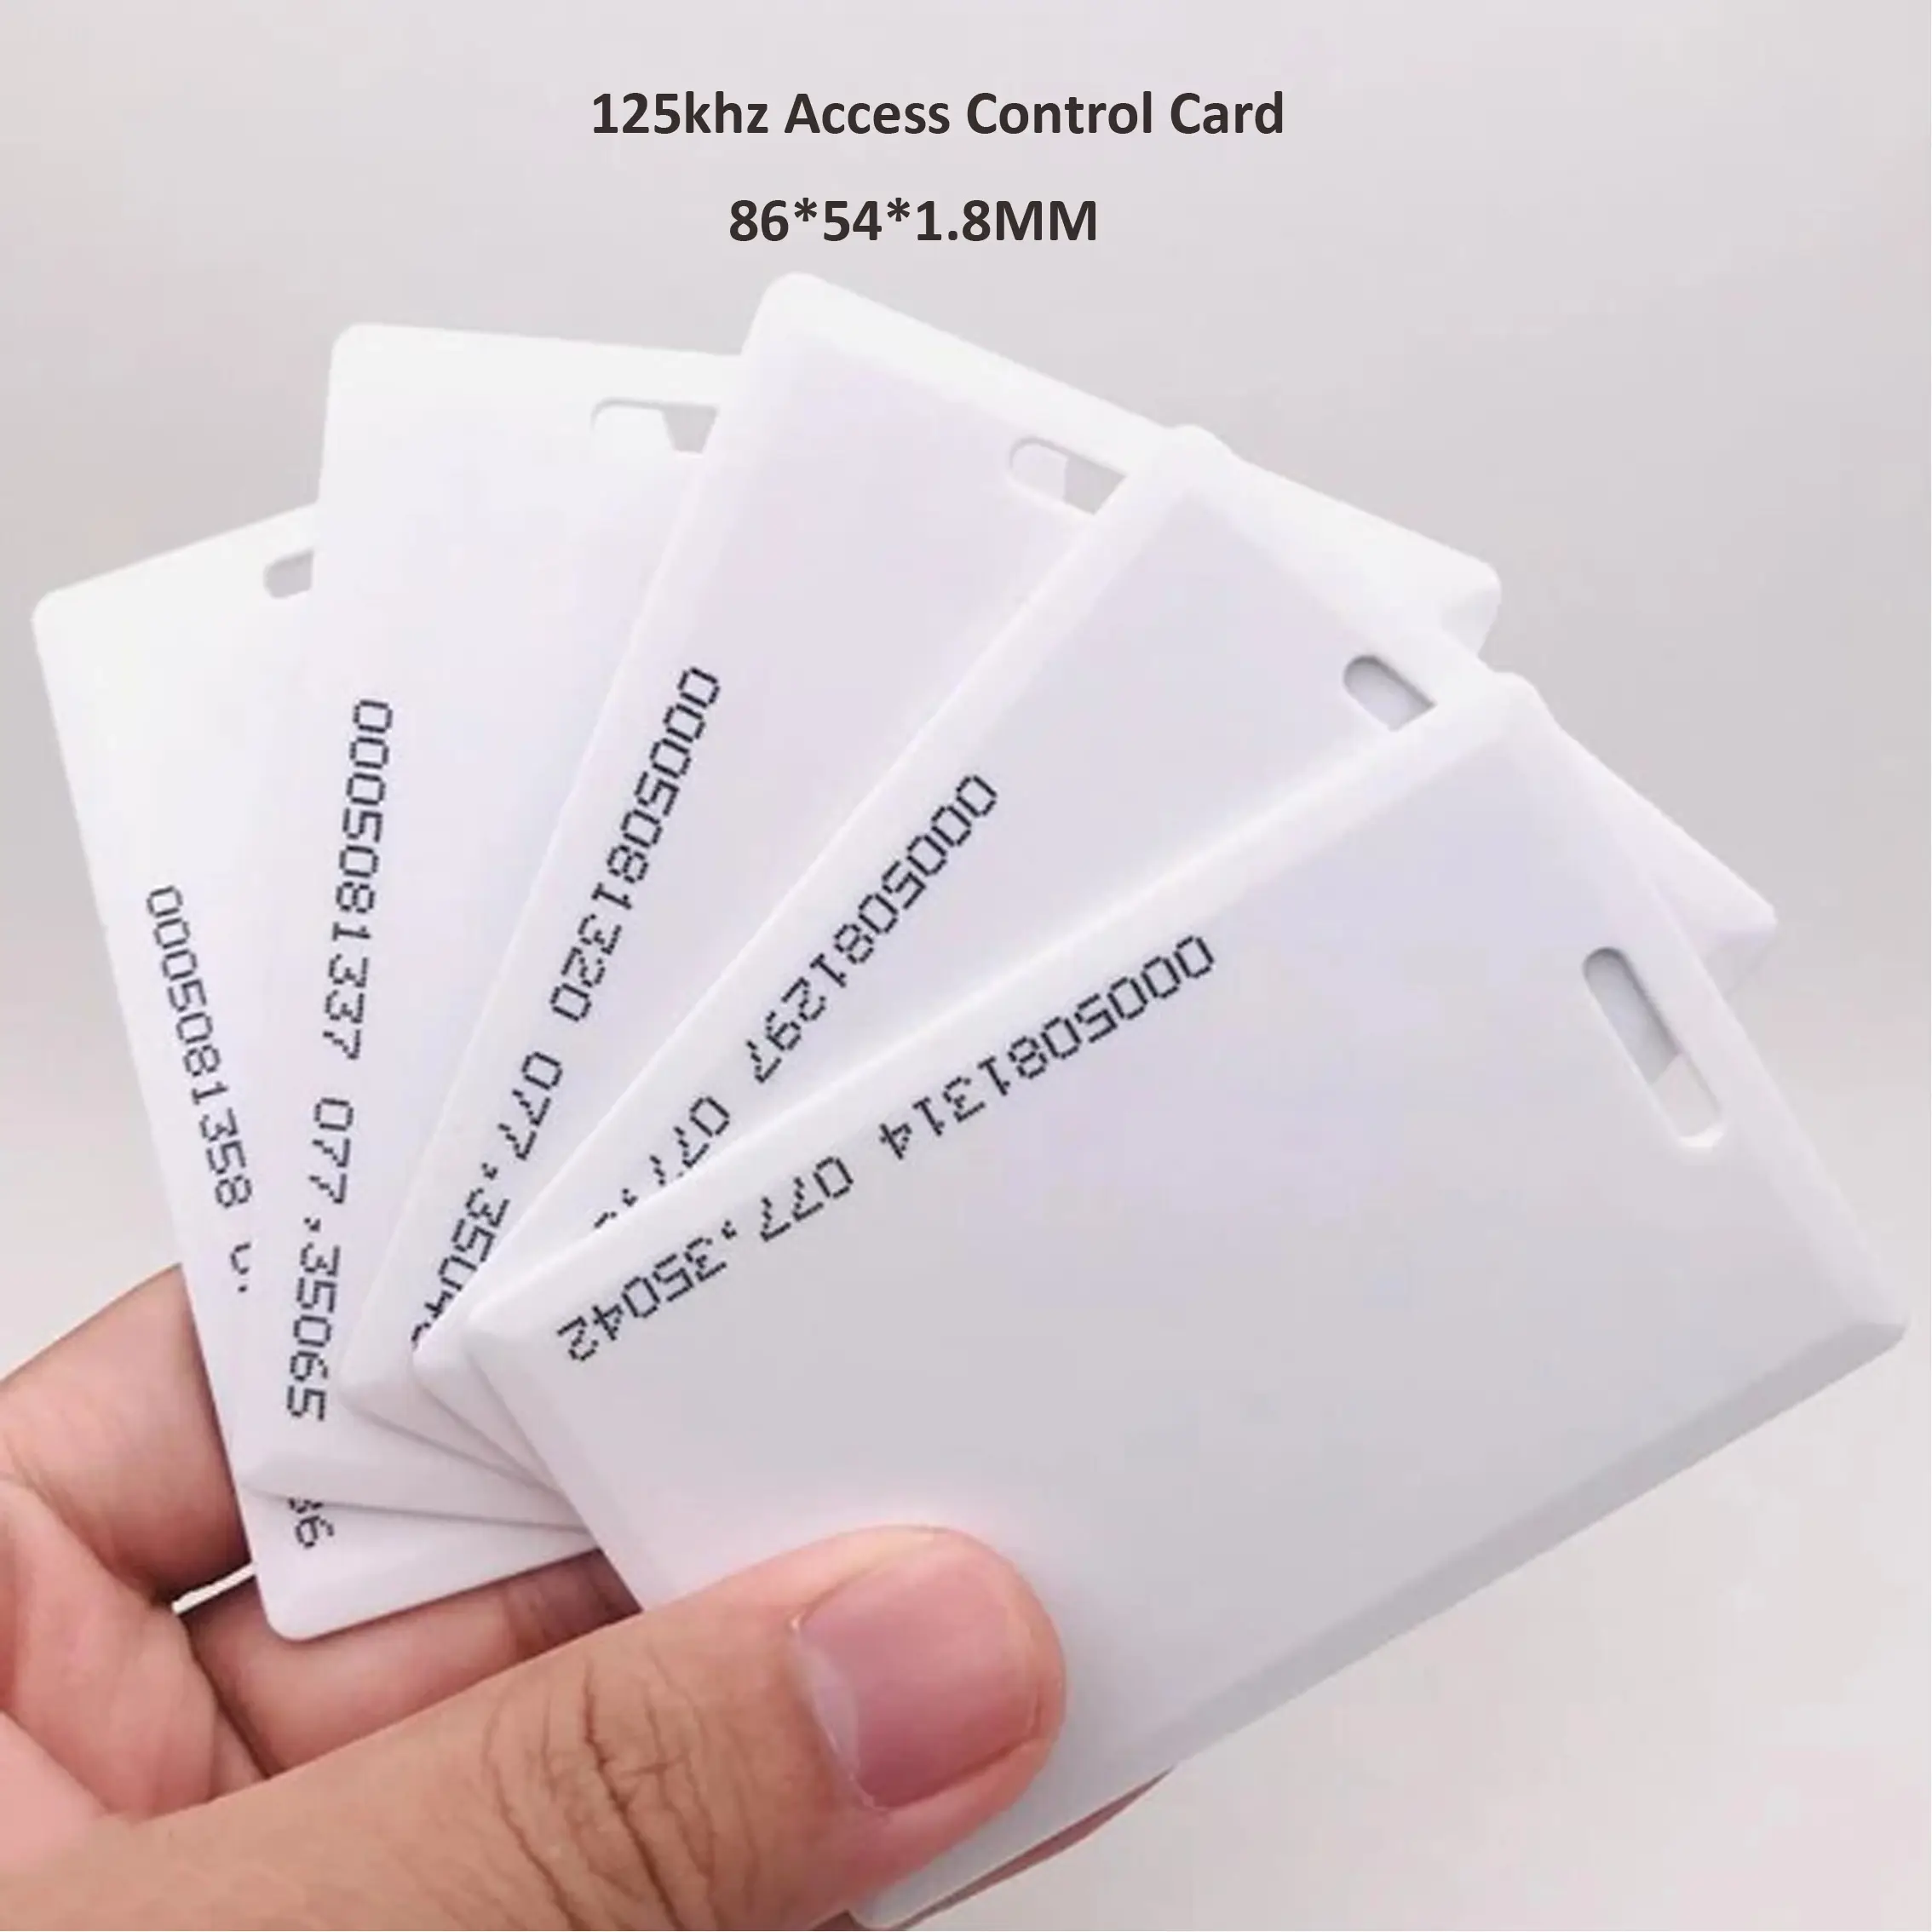 1.8mm EM4100 Tk4100 125khz cartão de controle de acesso somente leitura com número UID no cartão Proximidade RFID Card